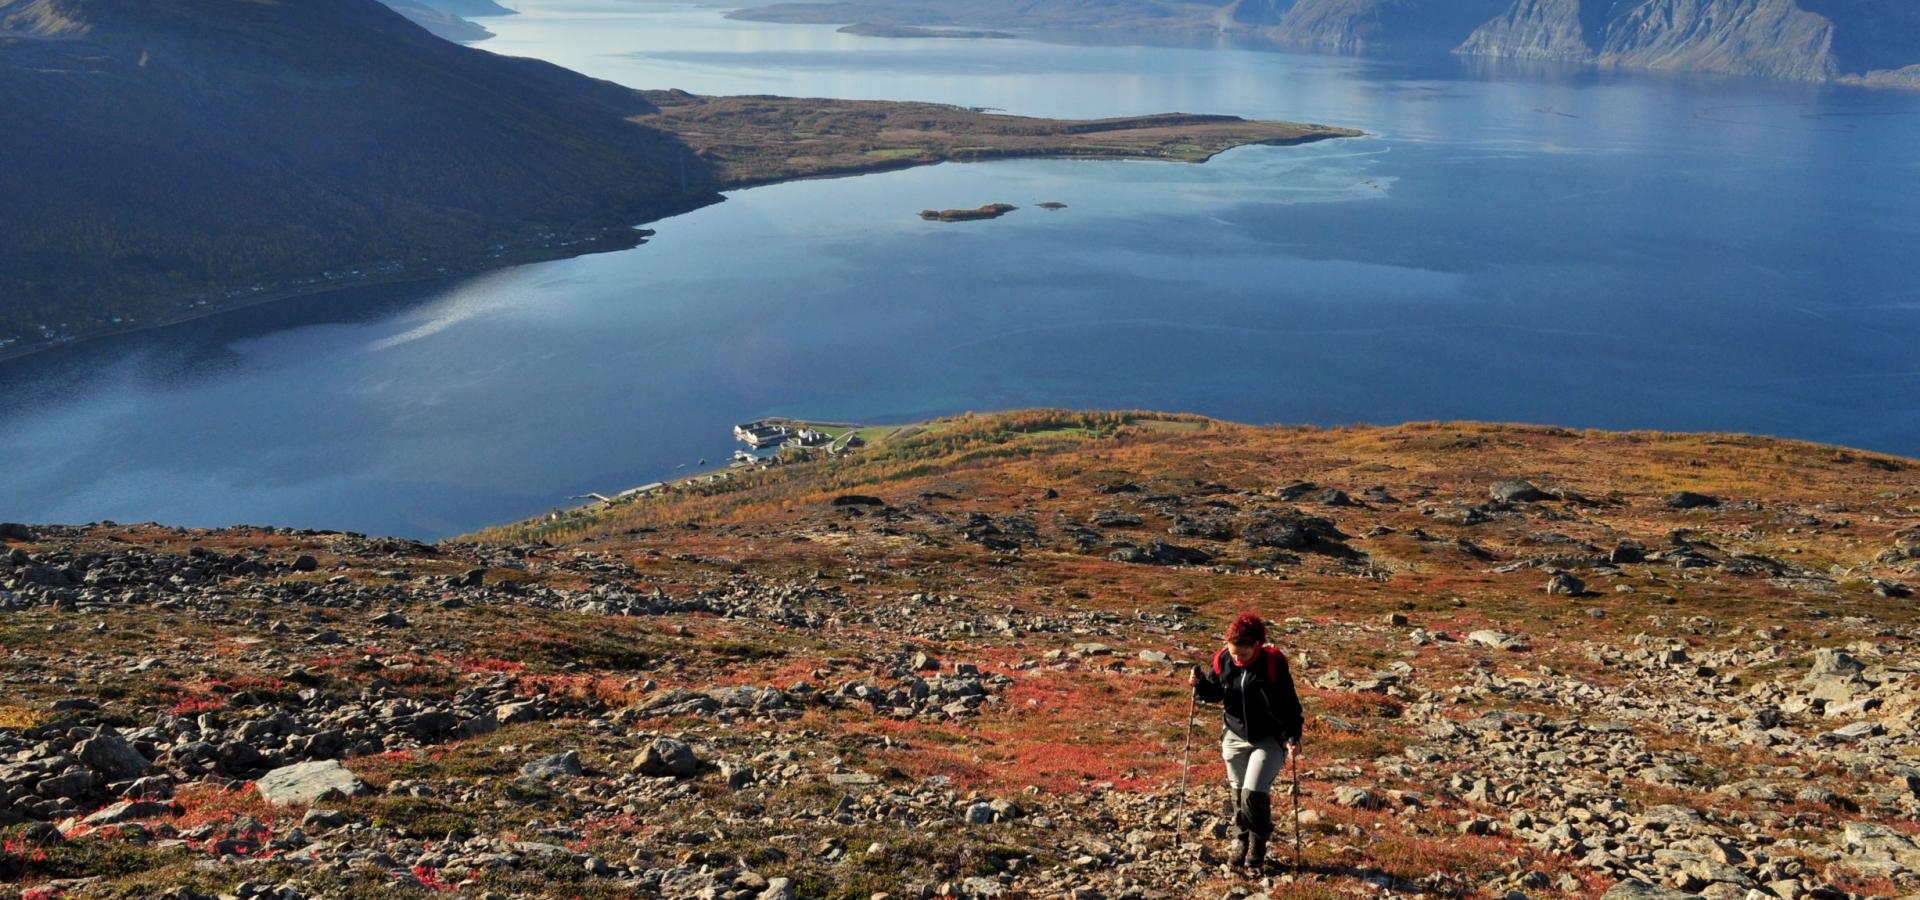 Turgåer på vei opp Uløytinden med utsikt over fjord og fjell